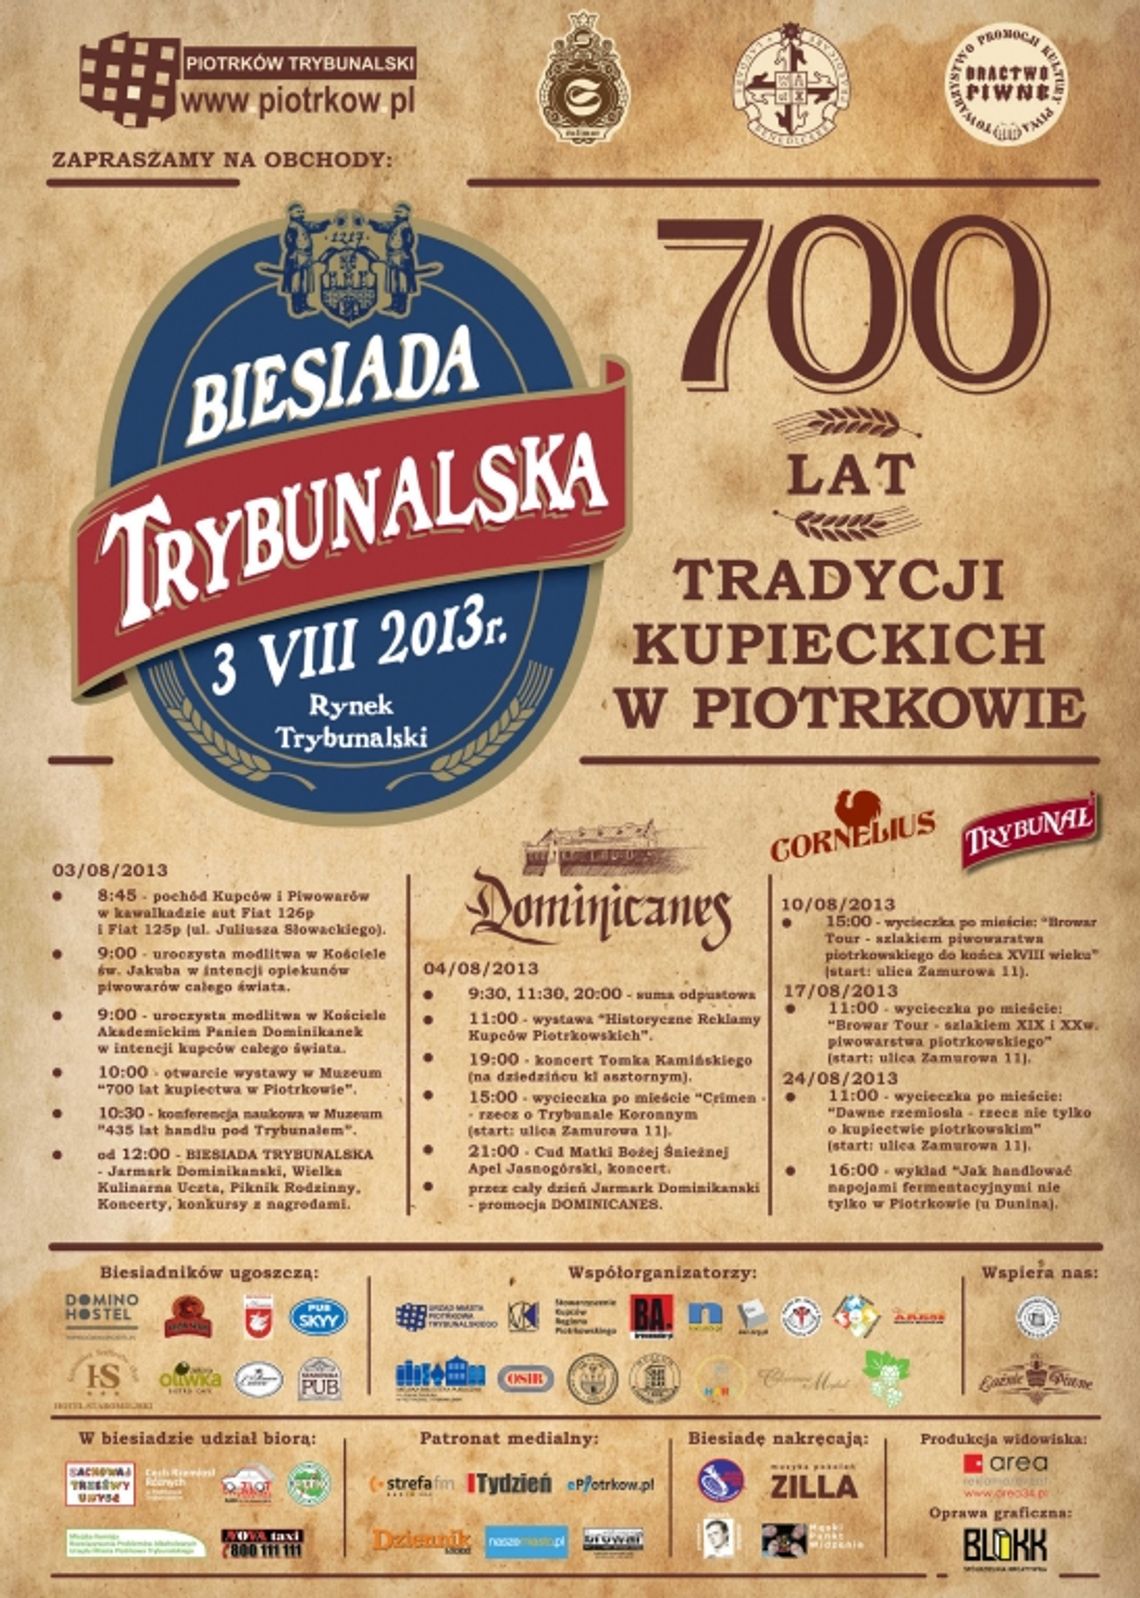 Biesiada Trybunalska na 700 lat tradycji kupieckich w Piotrkowie